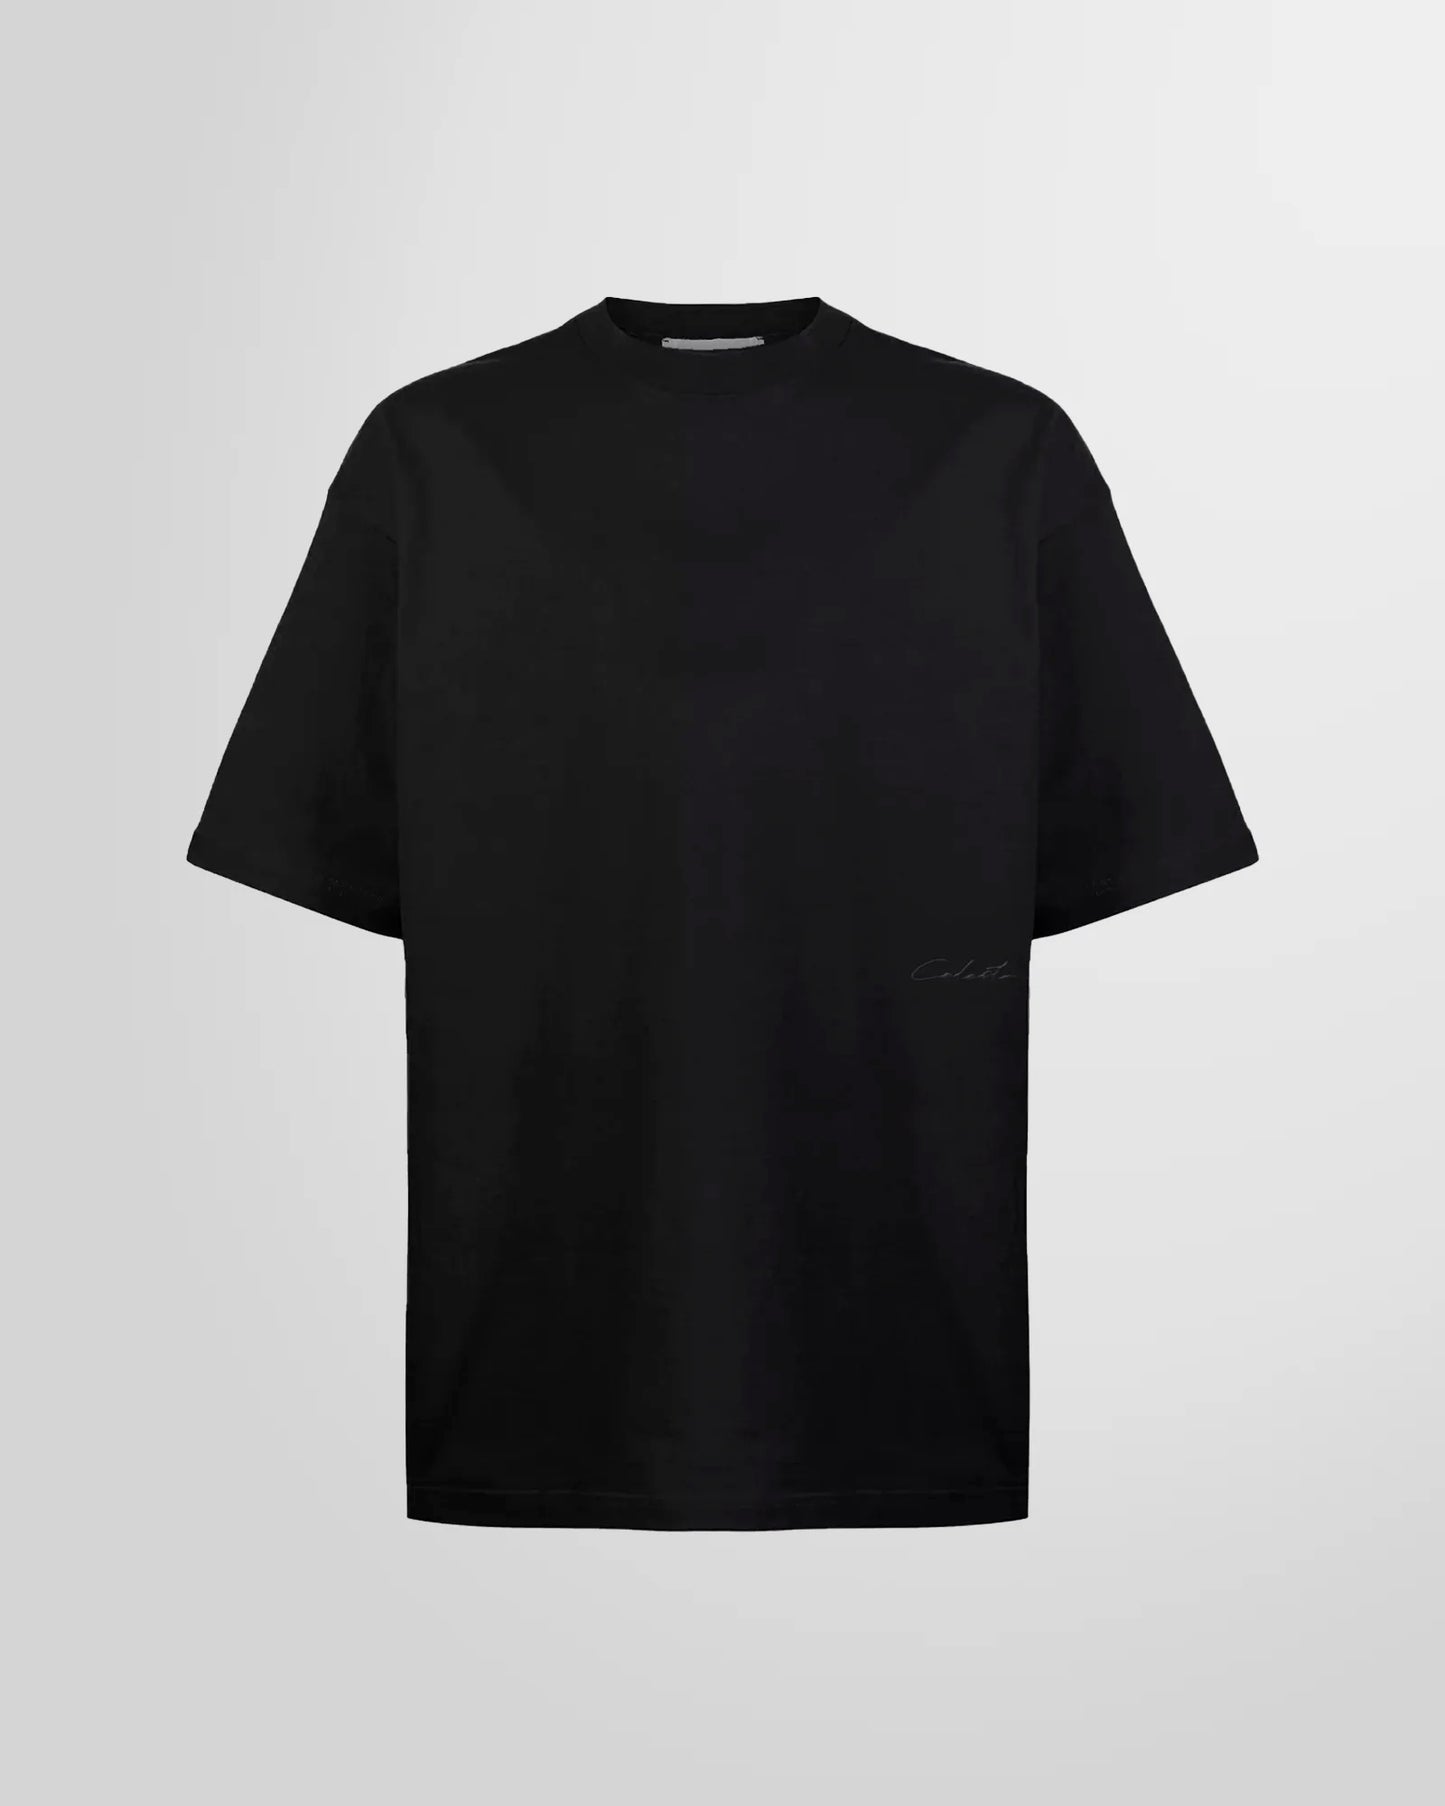 Celesto B Basic 1.0 T-Shirt